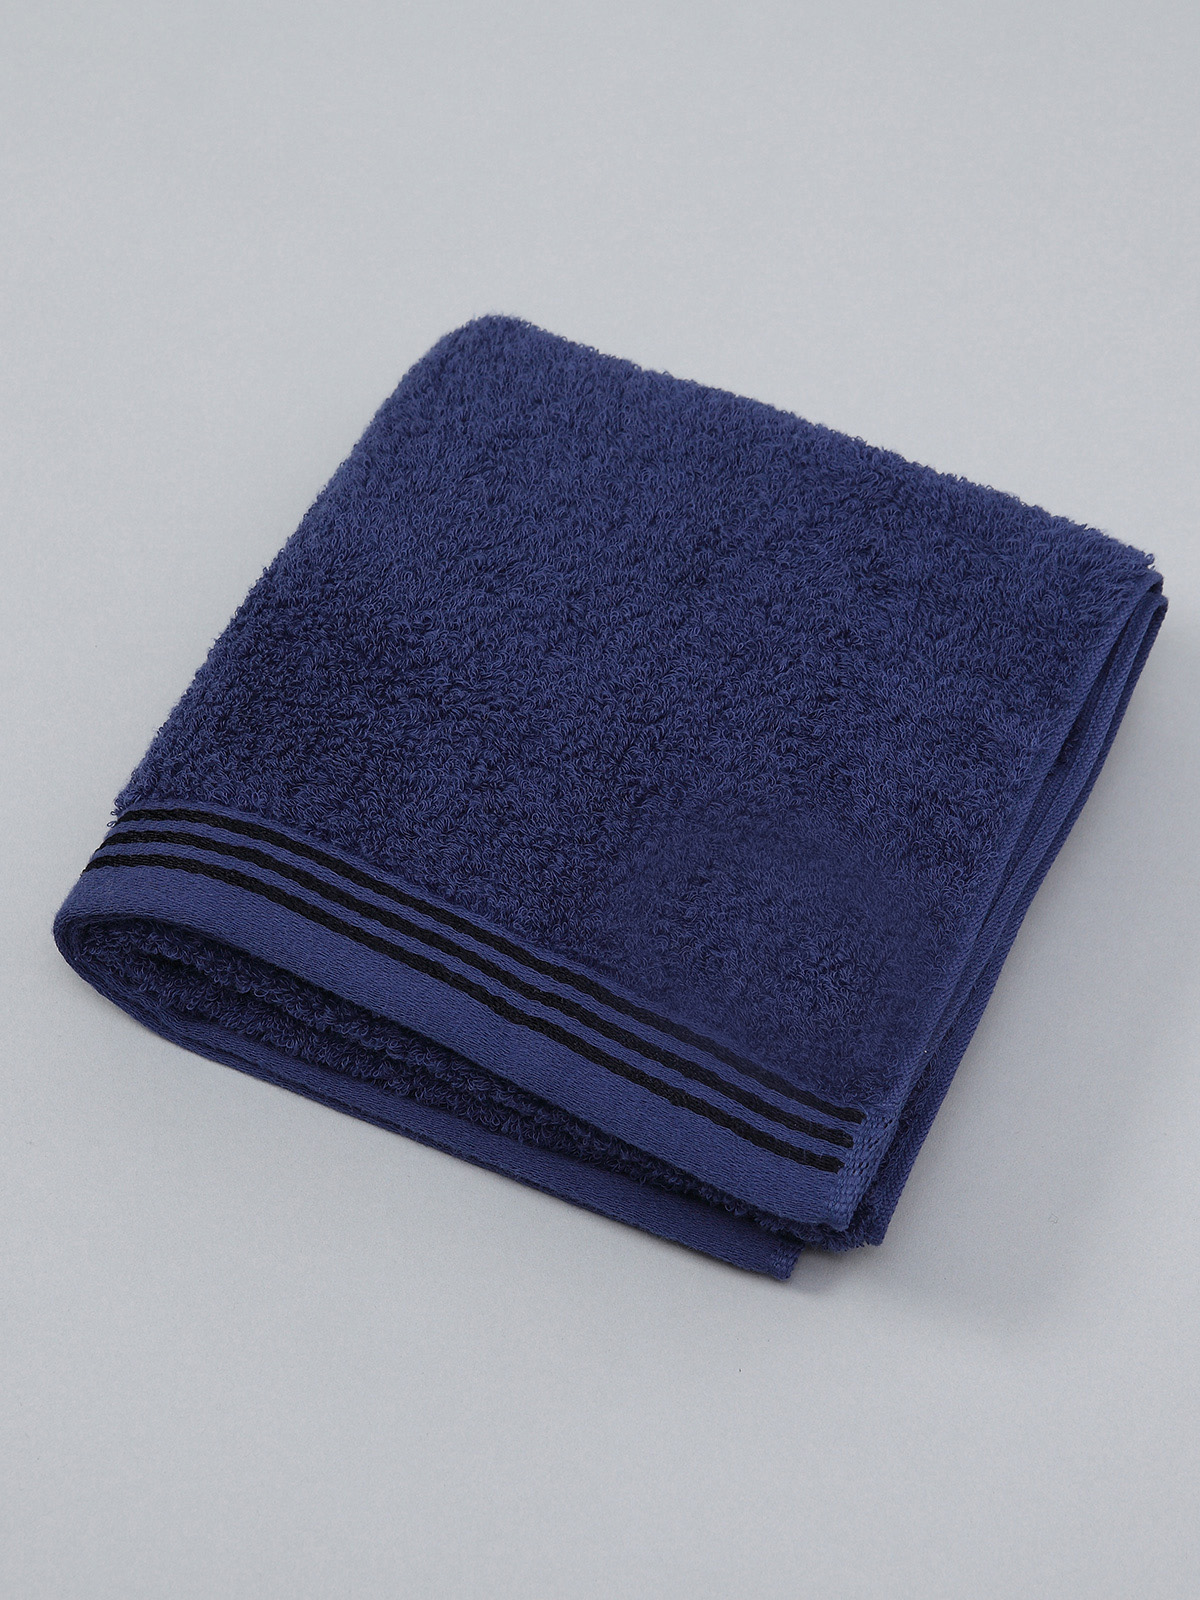 264円 数量限定価格!! 今治タオルを贅沢に使用した肌ざわり抜群のカラータオルマスク